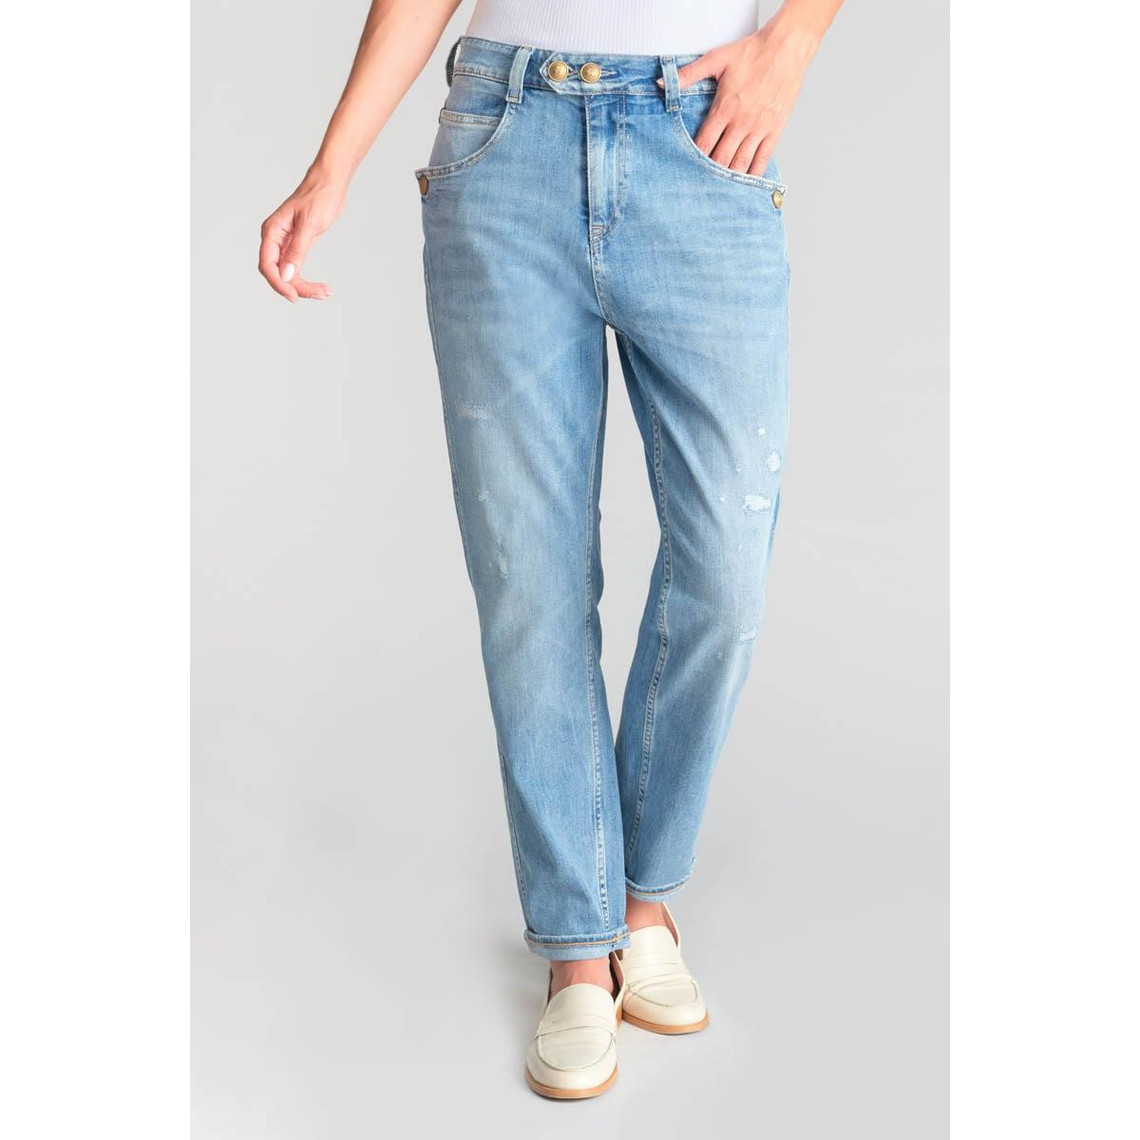 Jeans loose, large 400/60, longueur 34 bleu